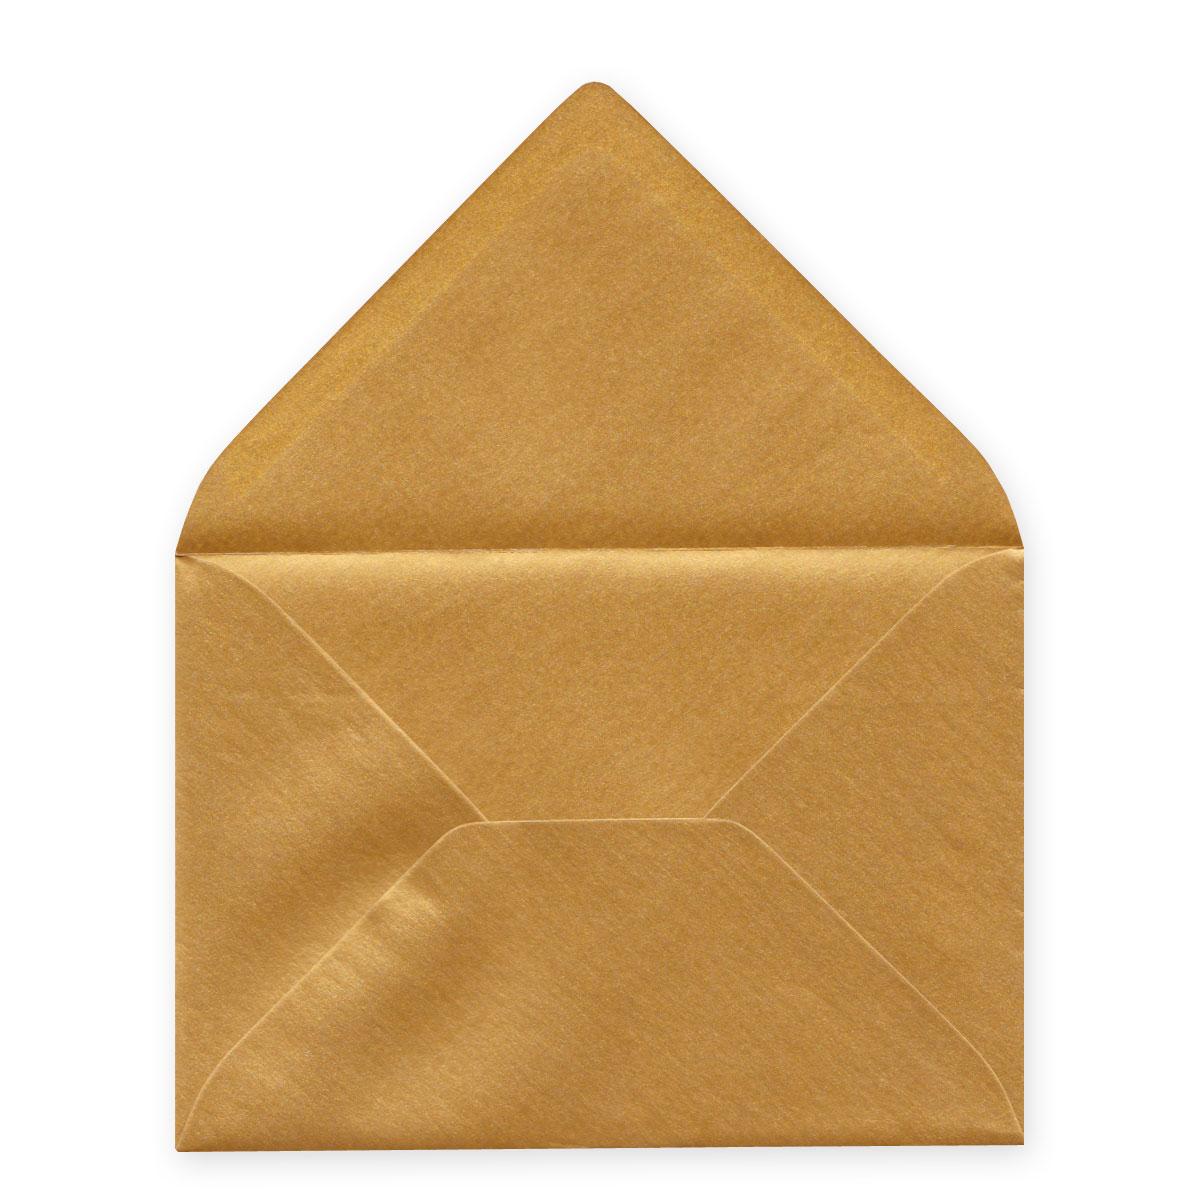 danke - Recycling-Grußkarte mit goldenem Umschlag